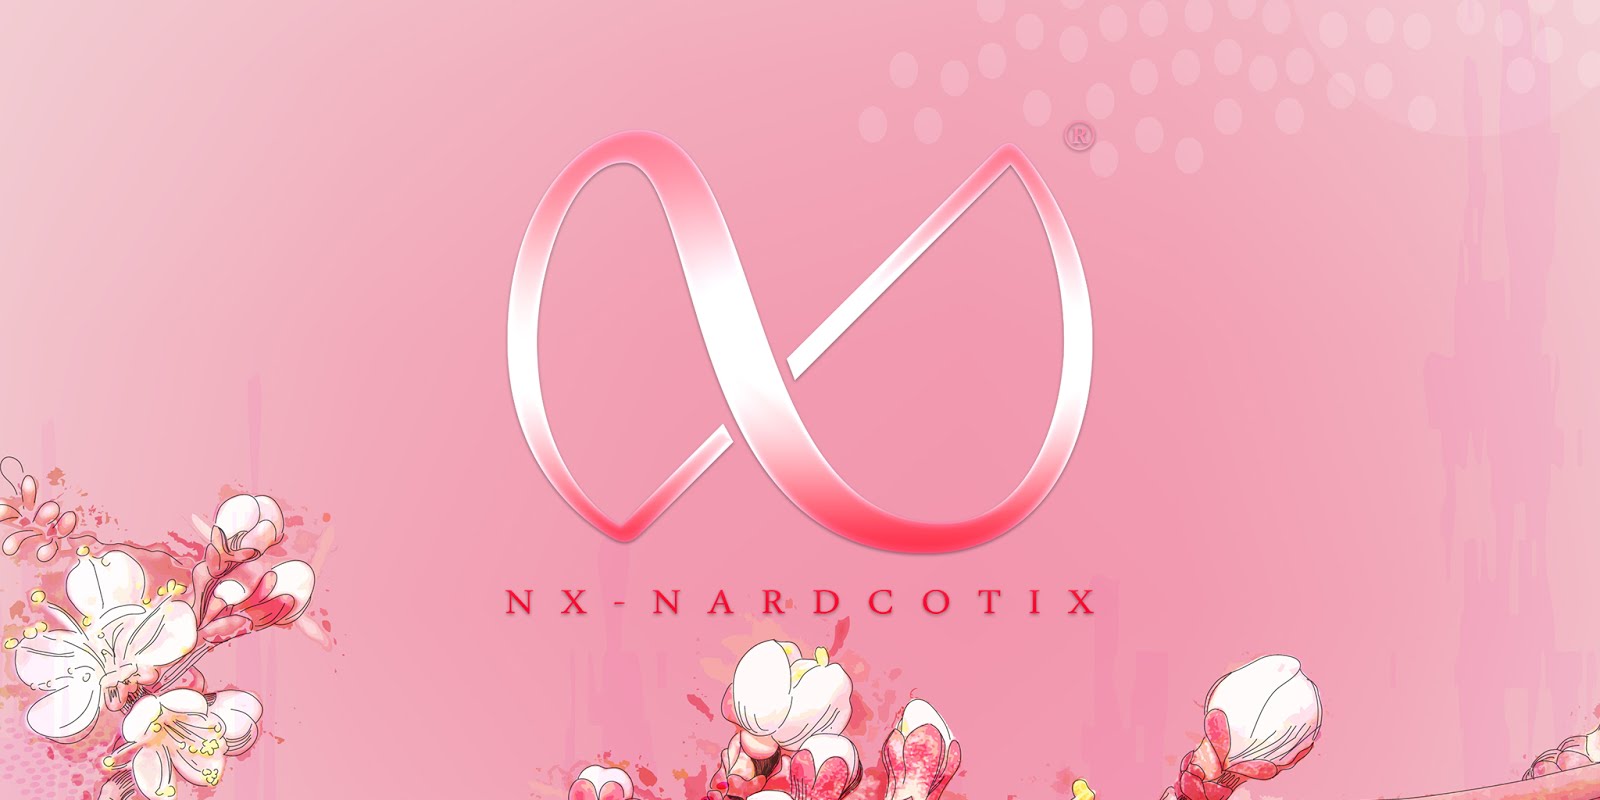 NX - NARDCOTIX